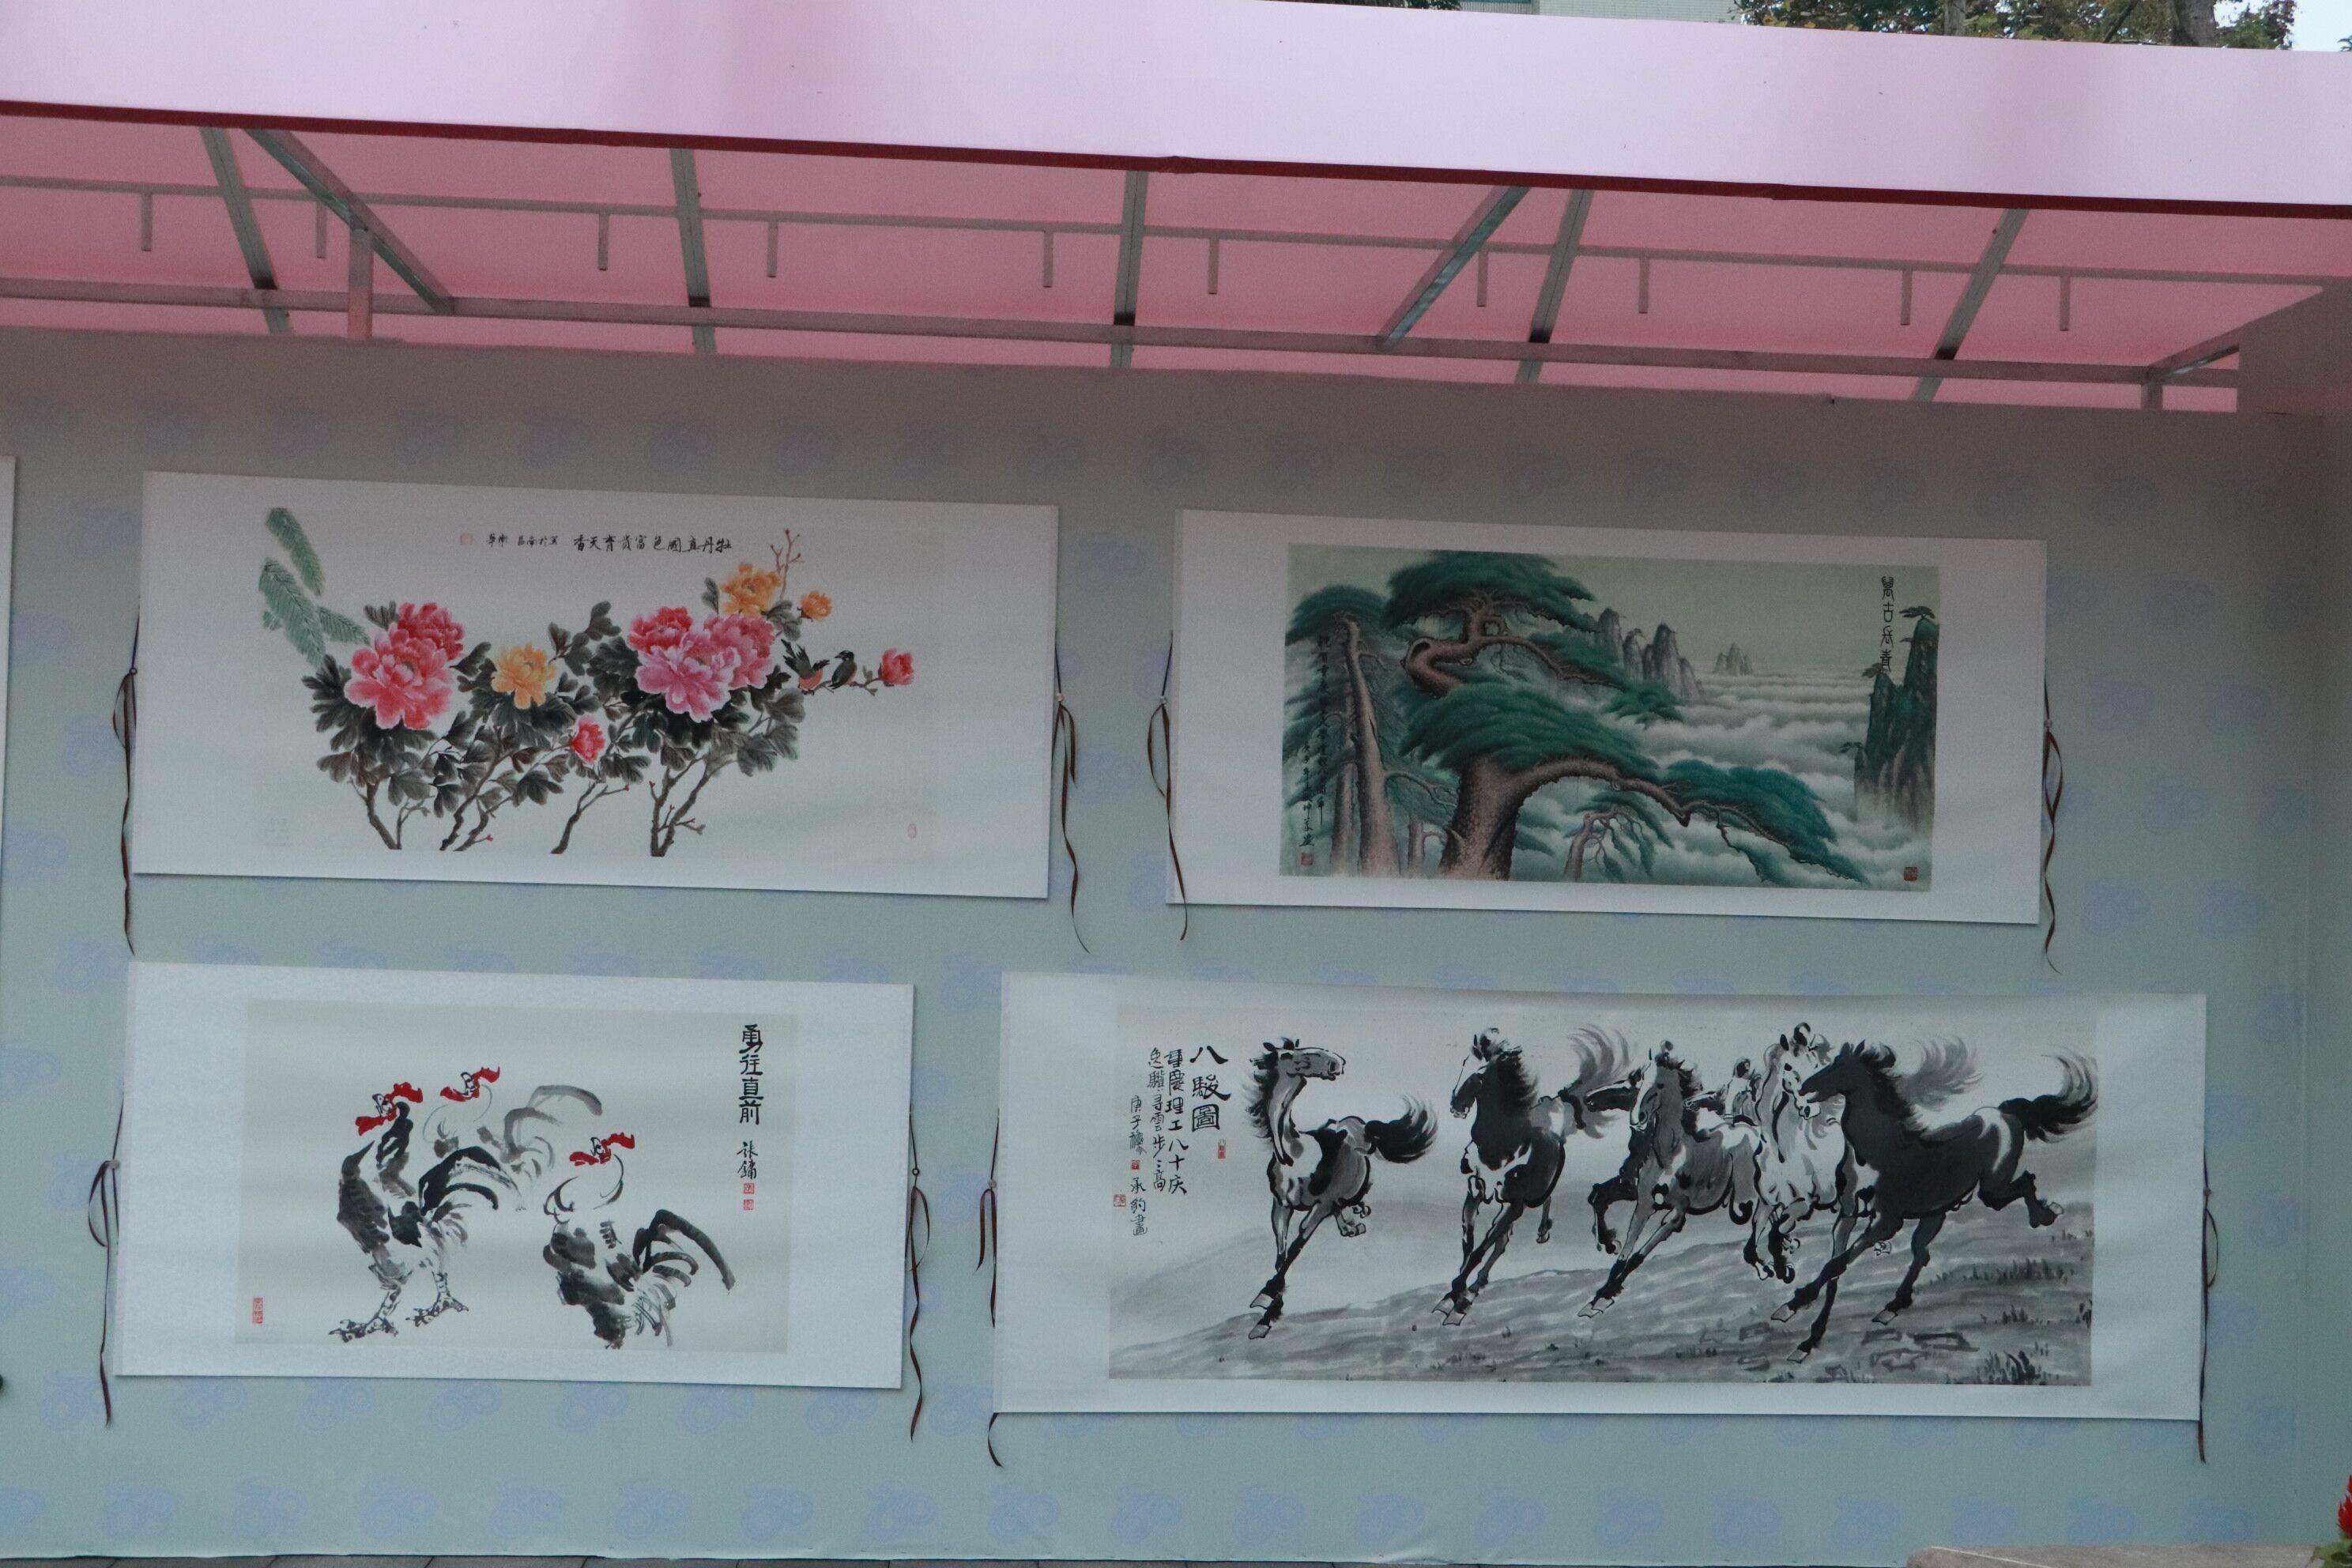 迎八十周年校庆重庆理工大学开展书法绘画摄影展